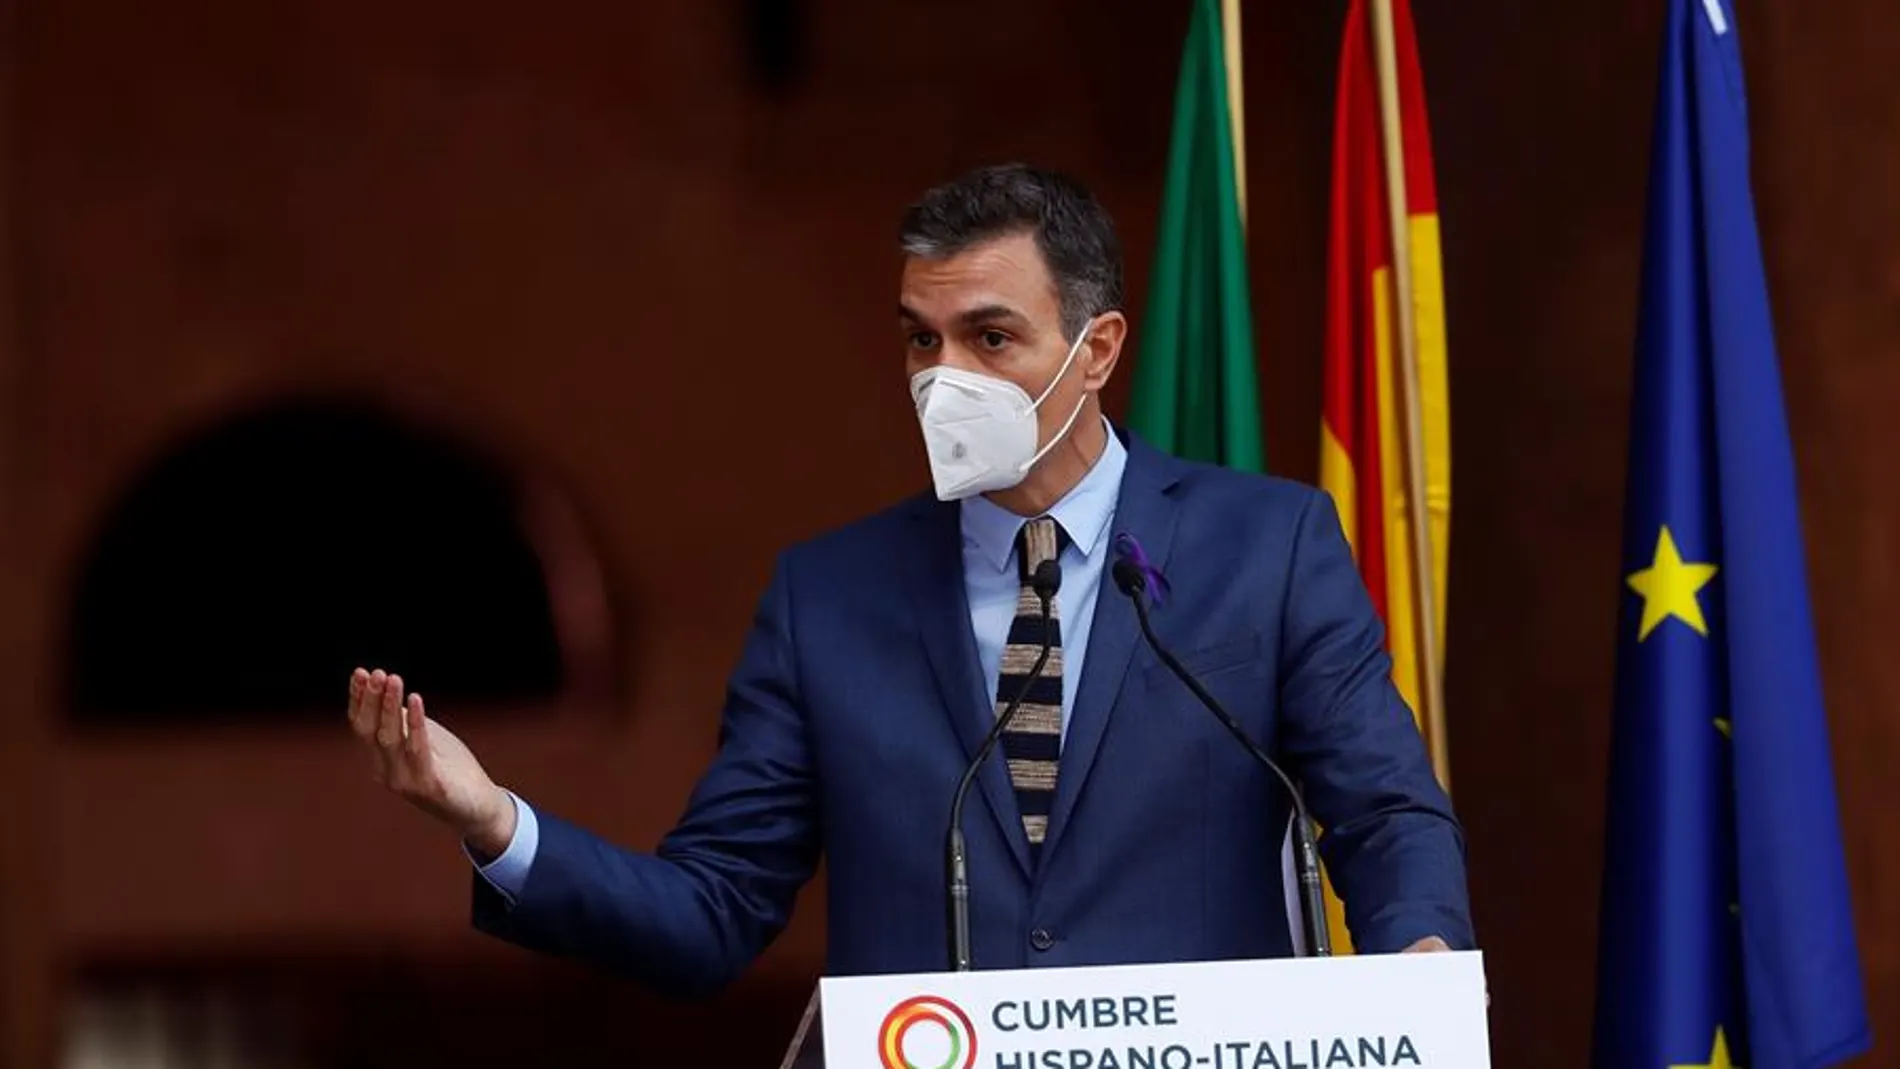 Pedro Sánchez, comparece ante los medios en el marco de la XIX Cumbre bilateral de España e Italia